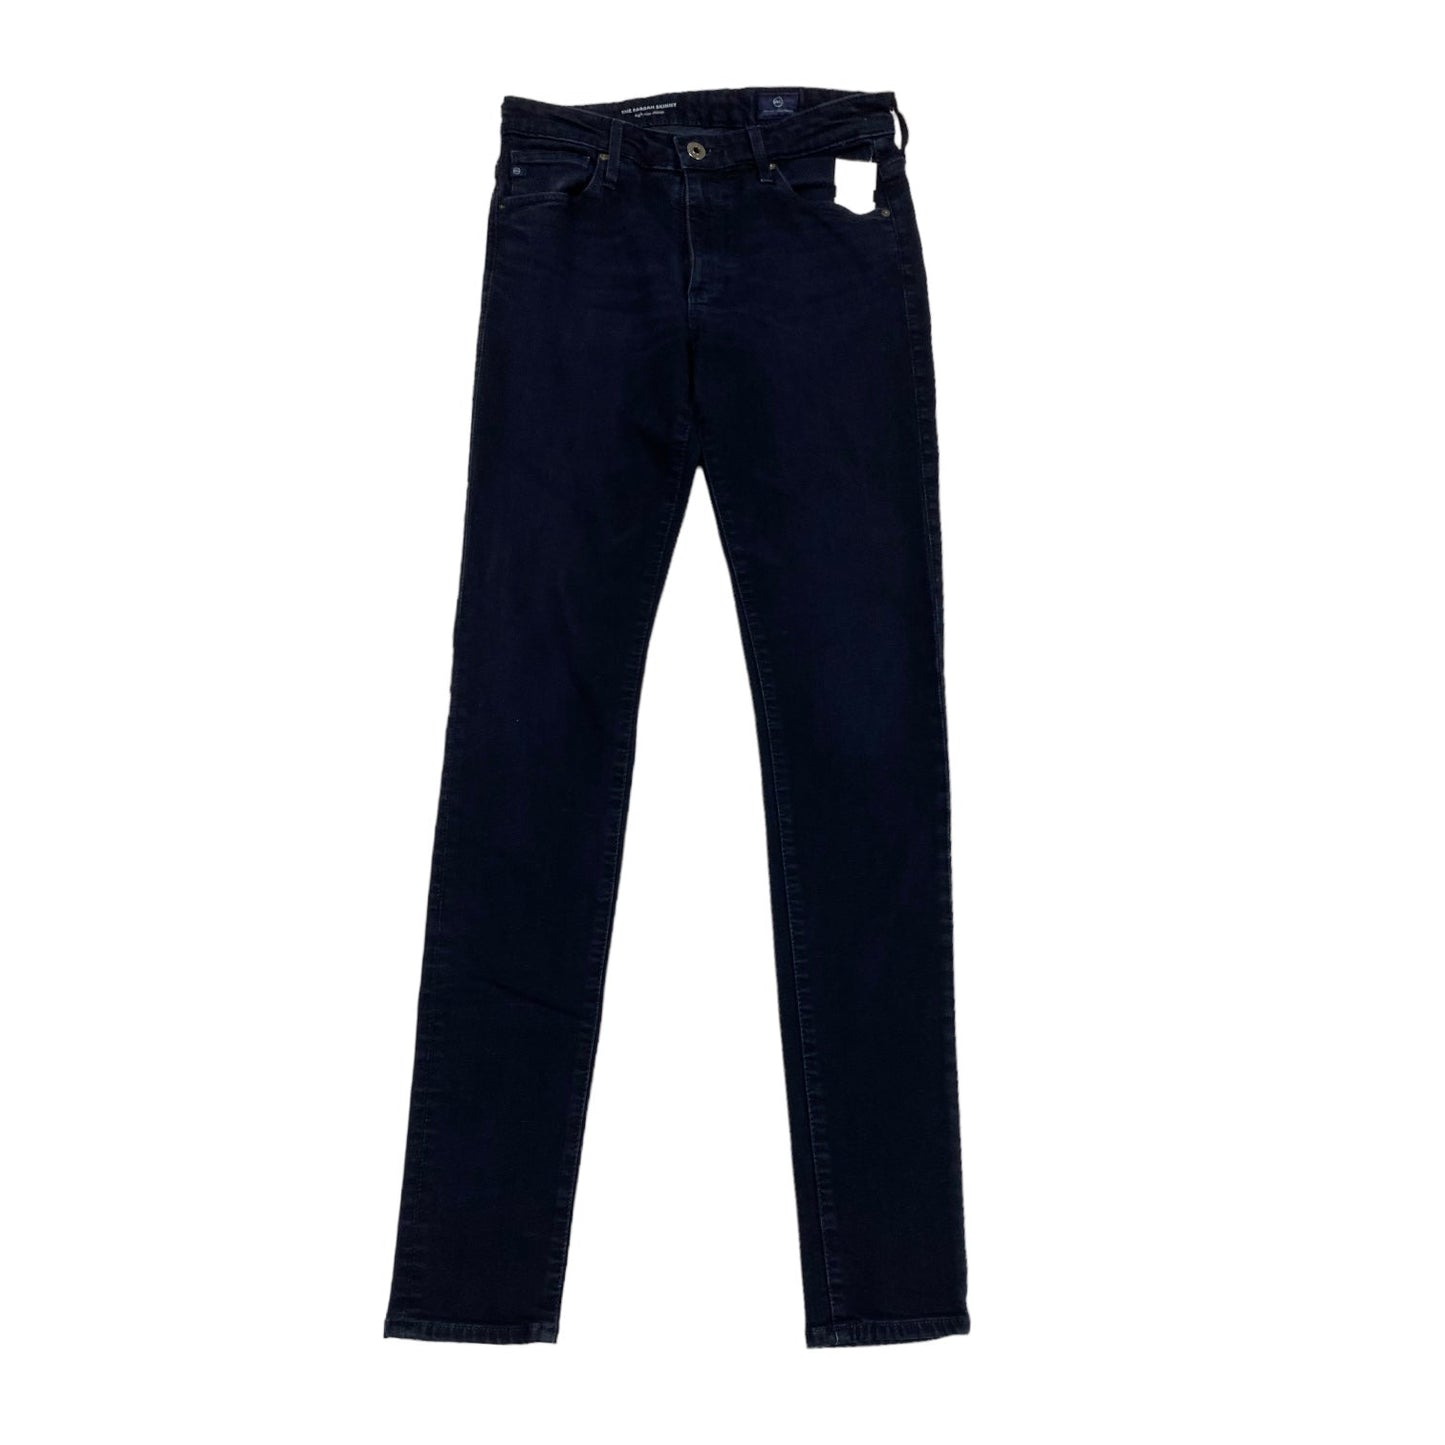 Blue Denim Jeans Skinny Adriano Goldschmied, Size 2